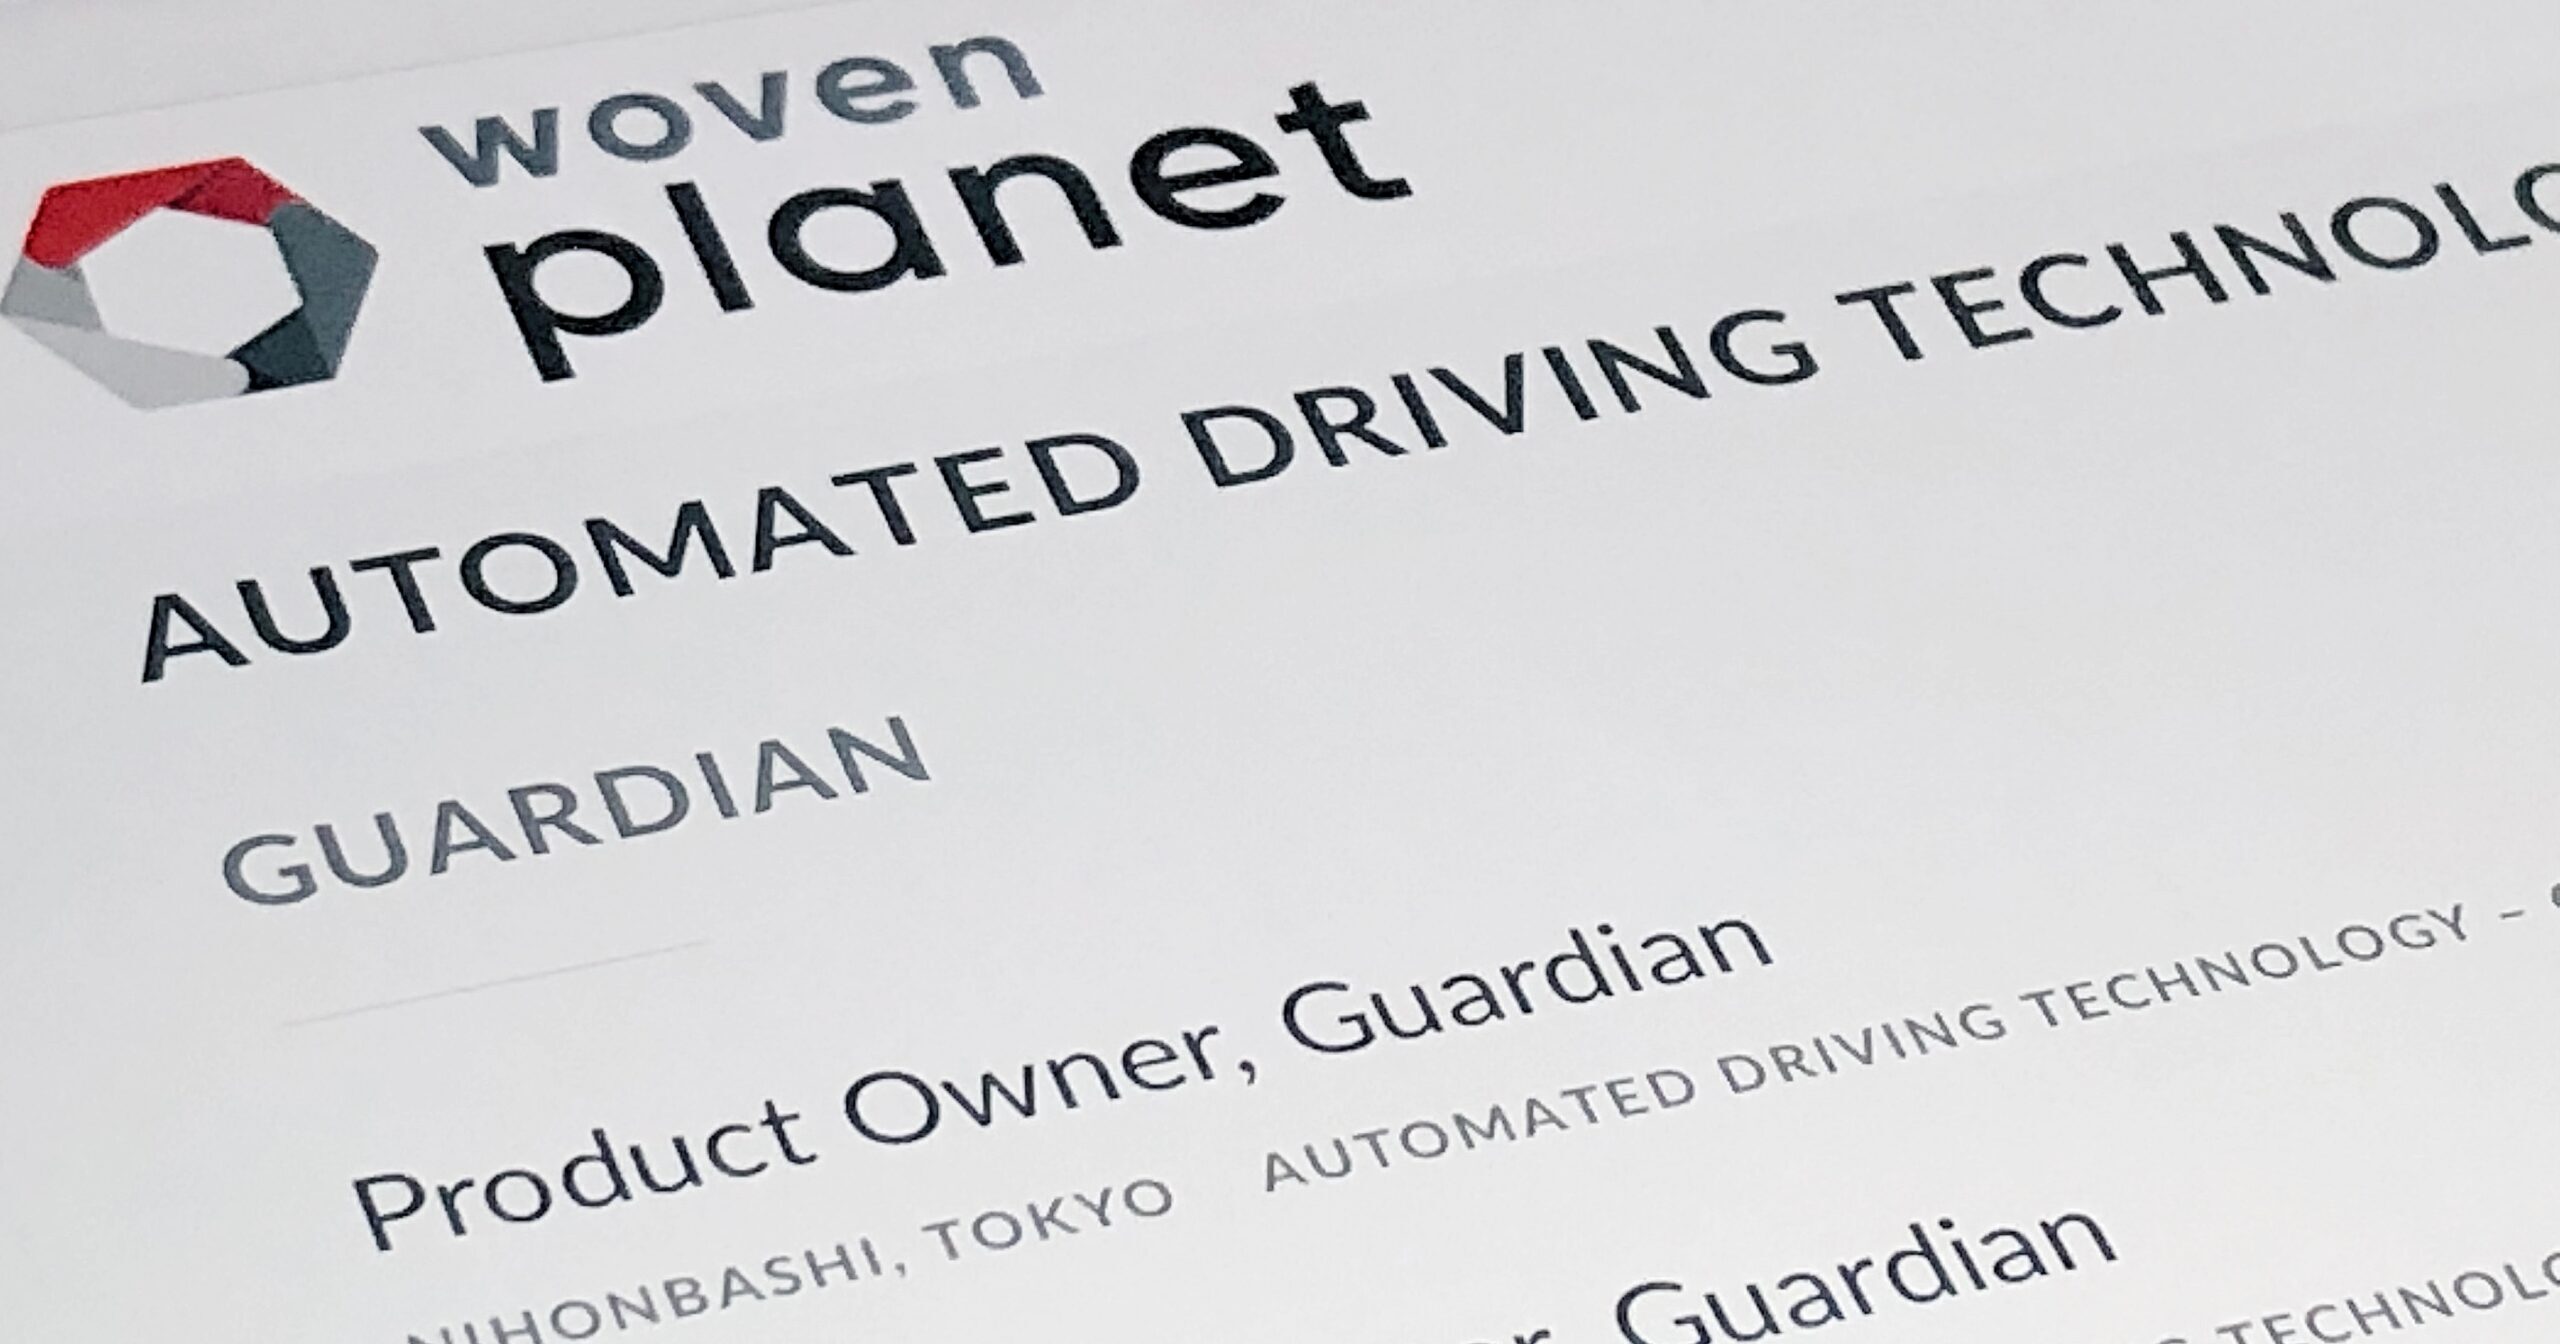 トヨタWoven Planetの採用情報が全て英語な理由　自動運転求人もWoven City求人も